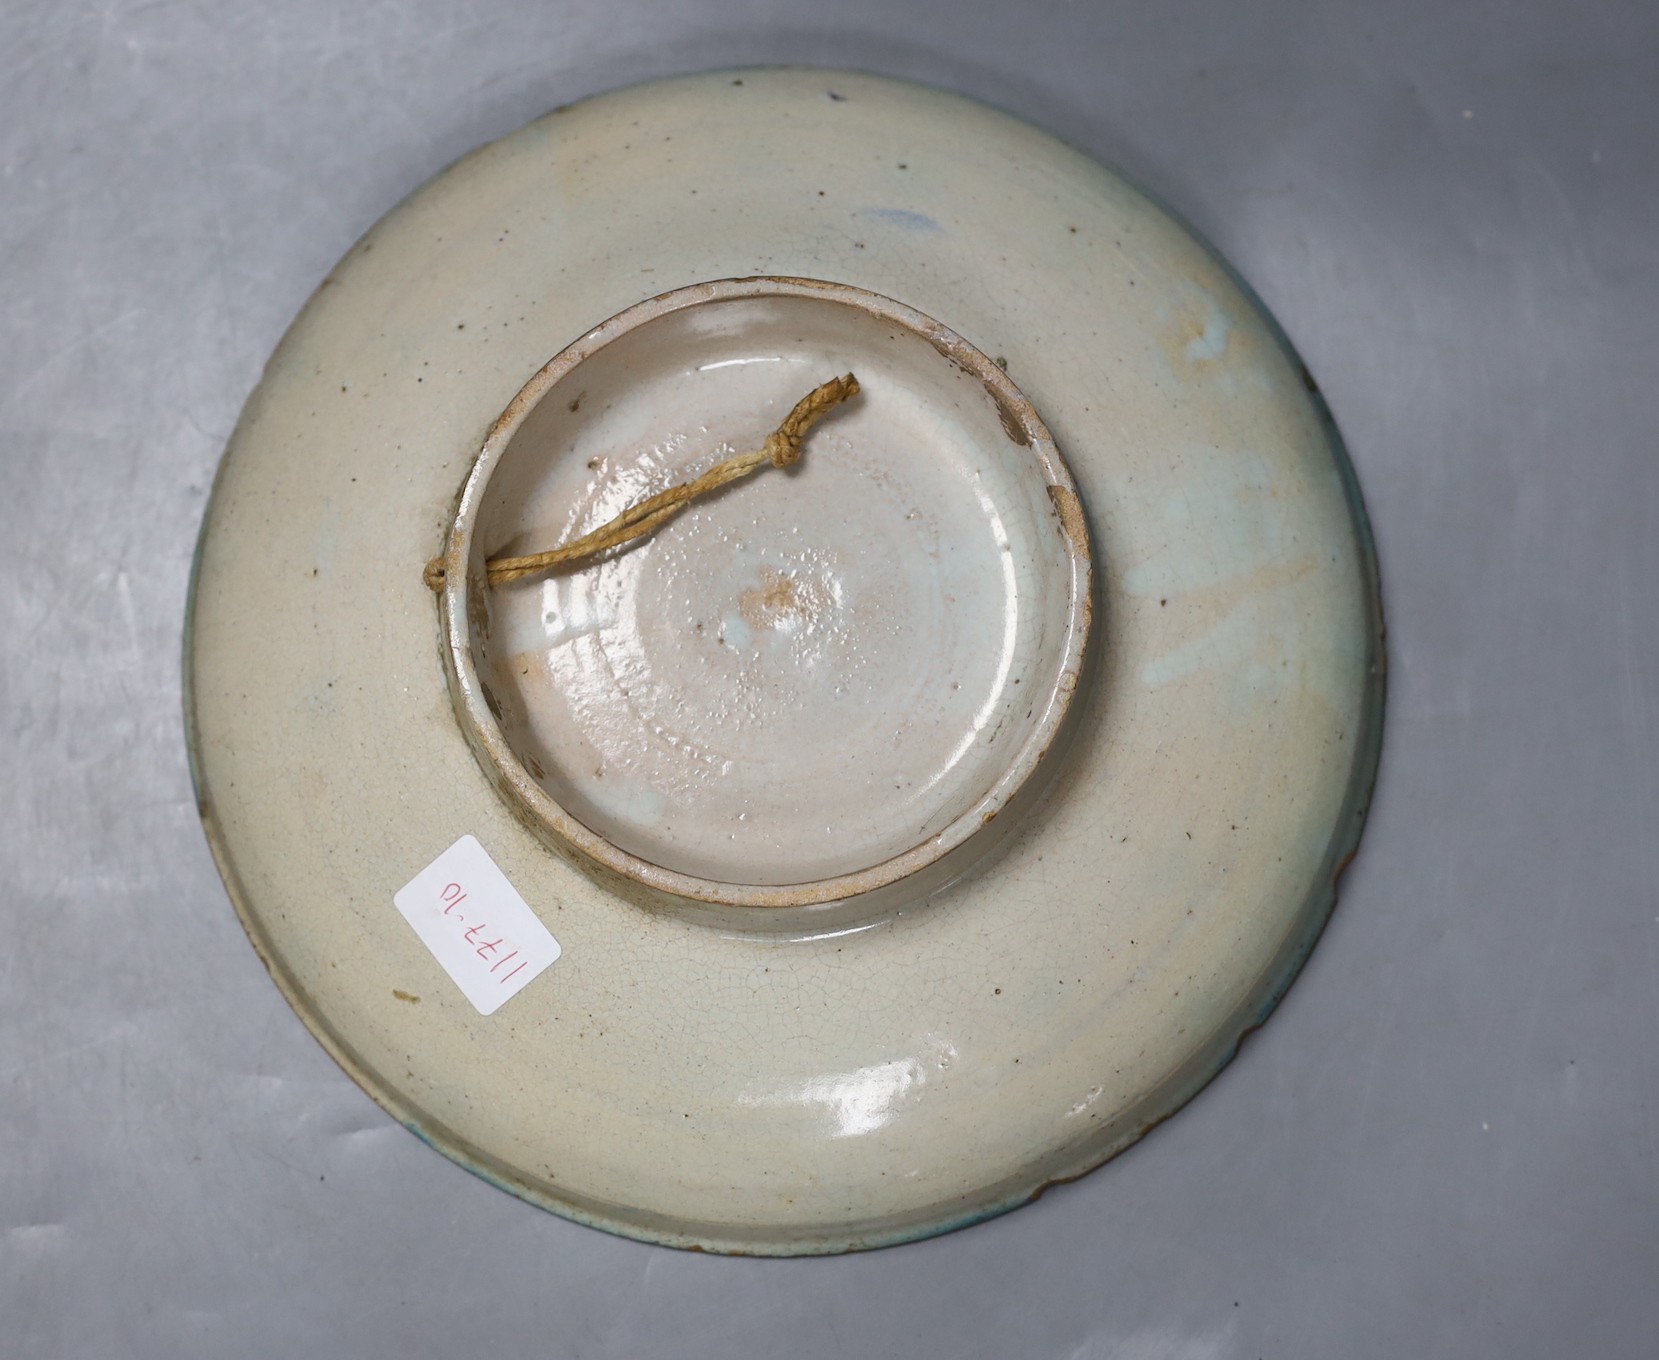 A Moroccan pottery dish, diameter 26cm